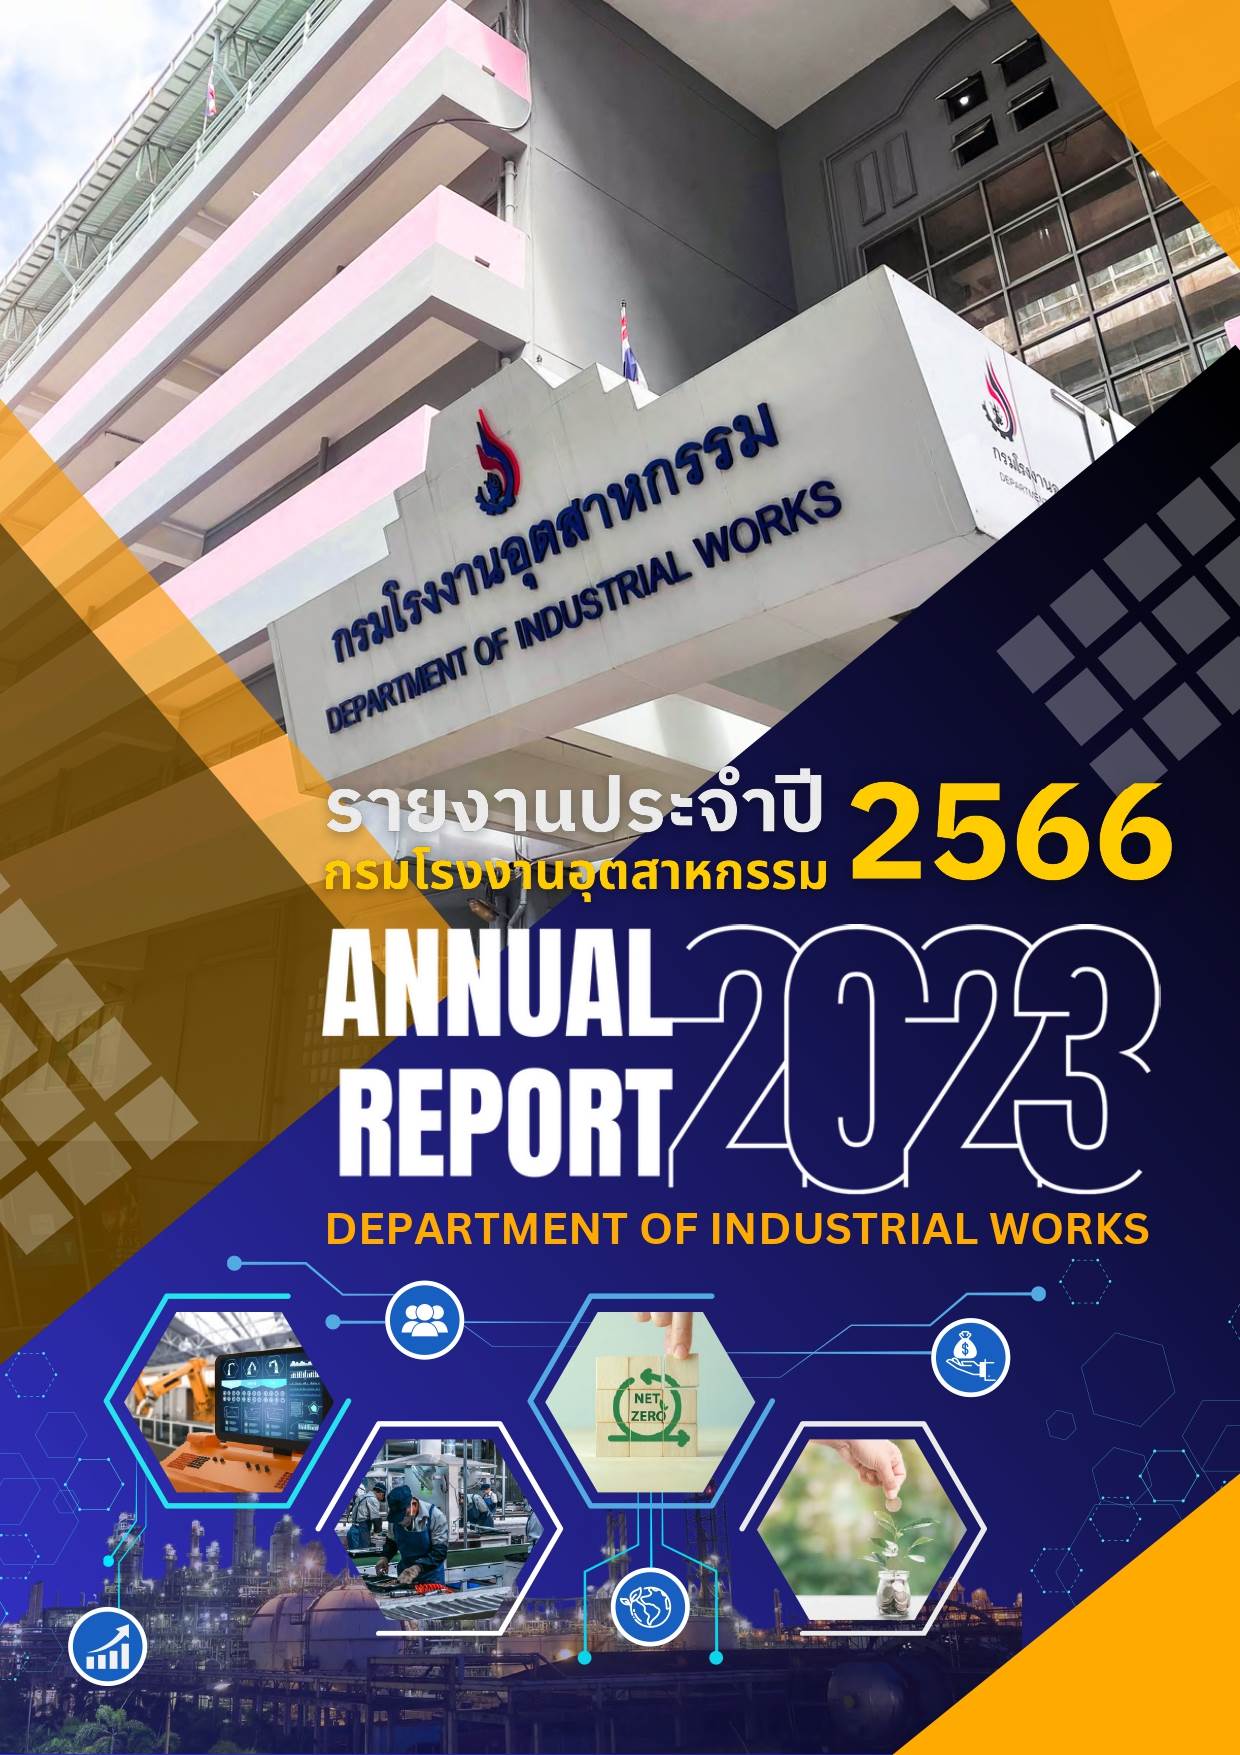 รายงานประจำปี กรมโรงงานอุตสาหกรรม ประจำปี 2566